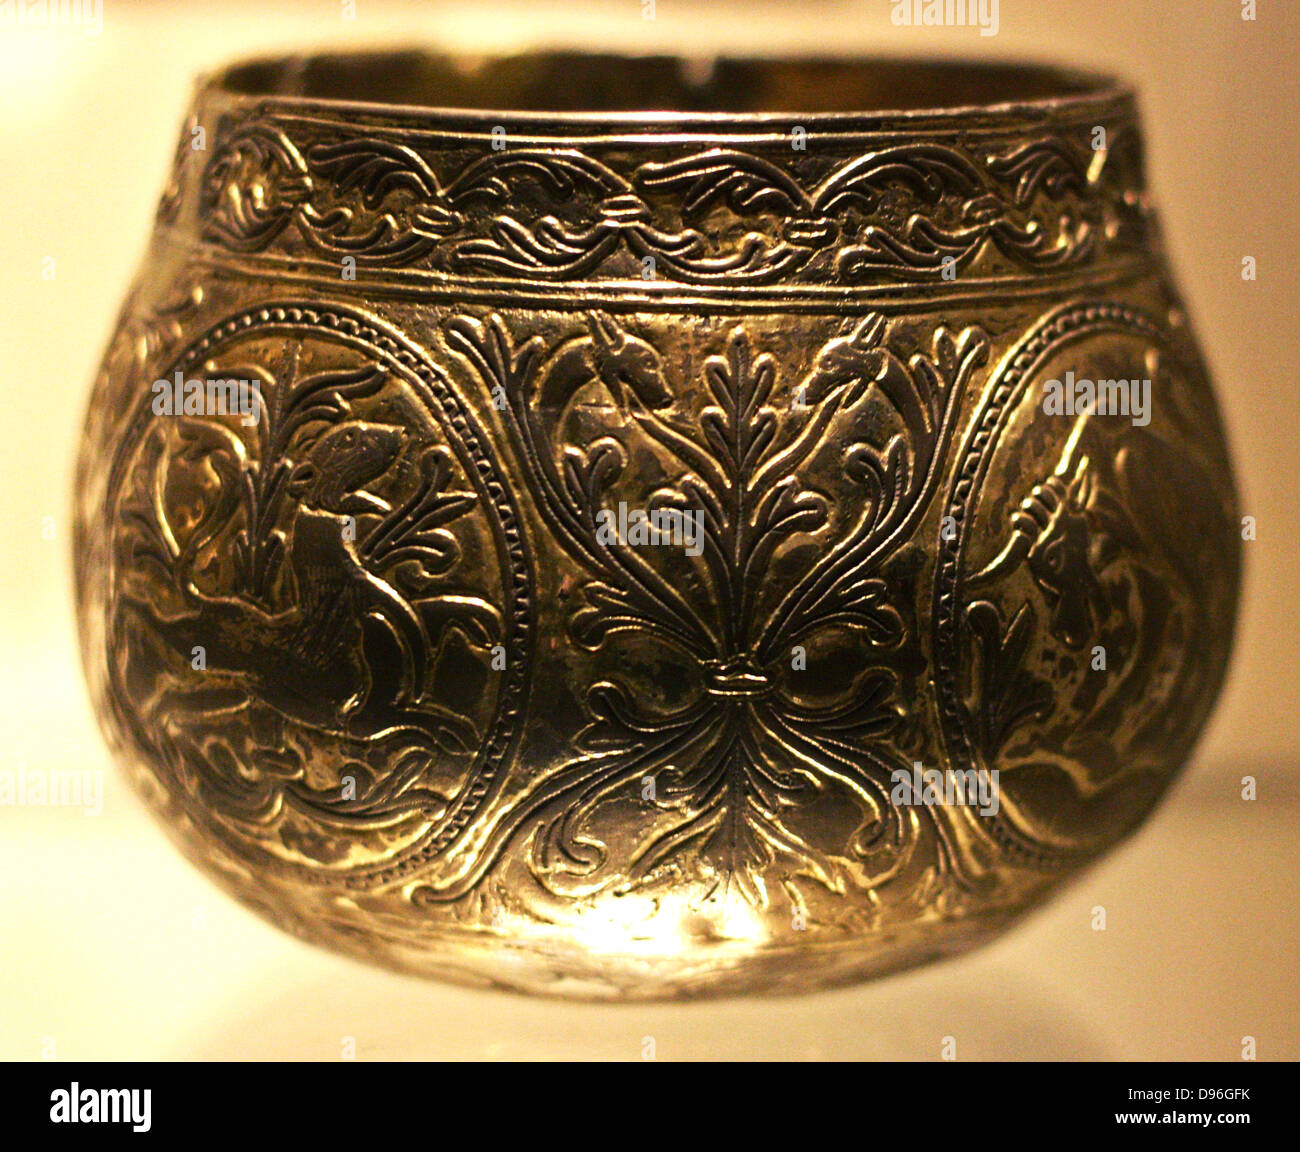 Dekorative Viking Hoard Cups. (Namens der Vale von York Cup und die Halton Moor Cup) aus Gold und Silber. Mit Tieren und foliate Mustern. Gefunden begraben in England. Waren kurz nach der AD 927 begraben. Stockfoto